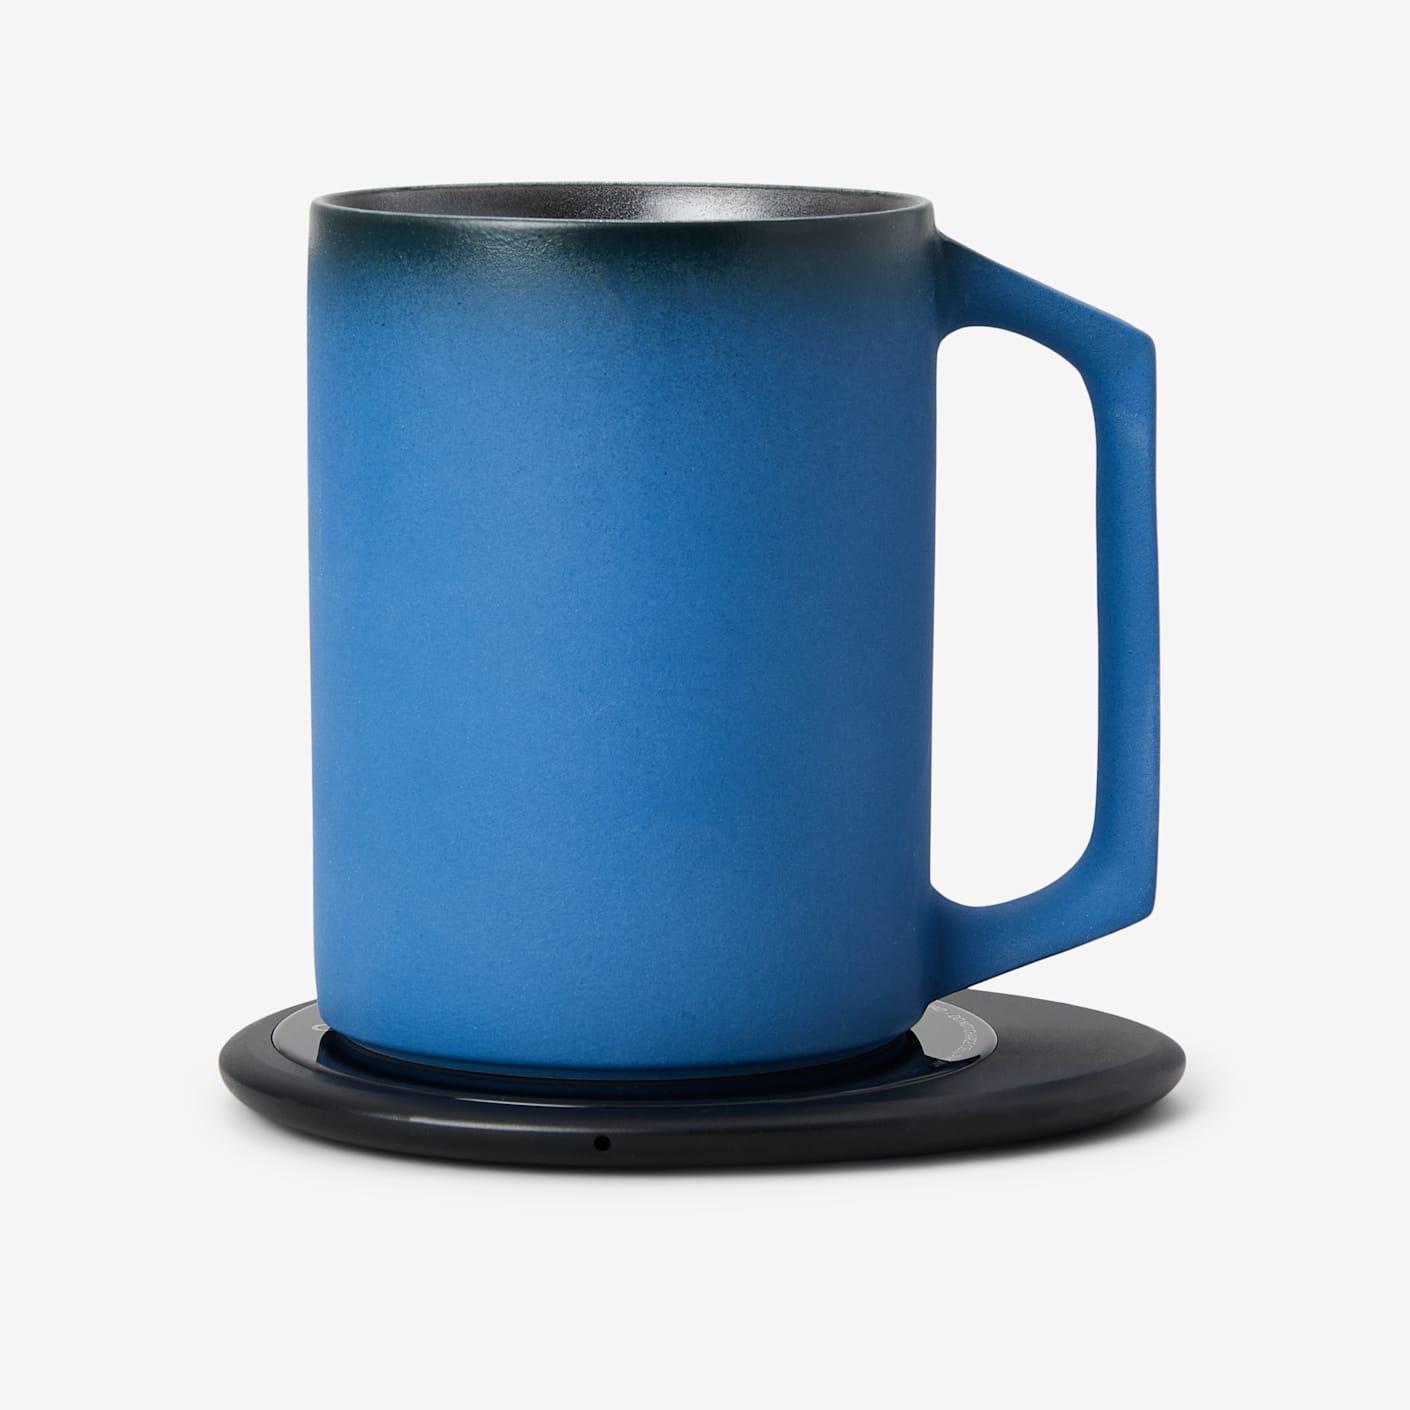 UI Self-Heating Mug